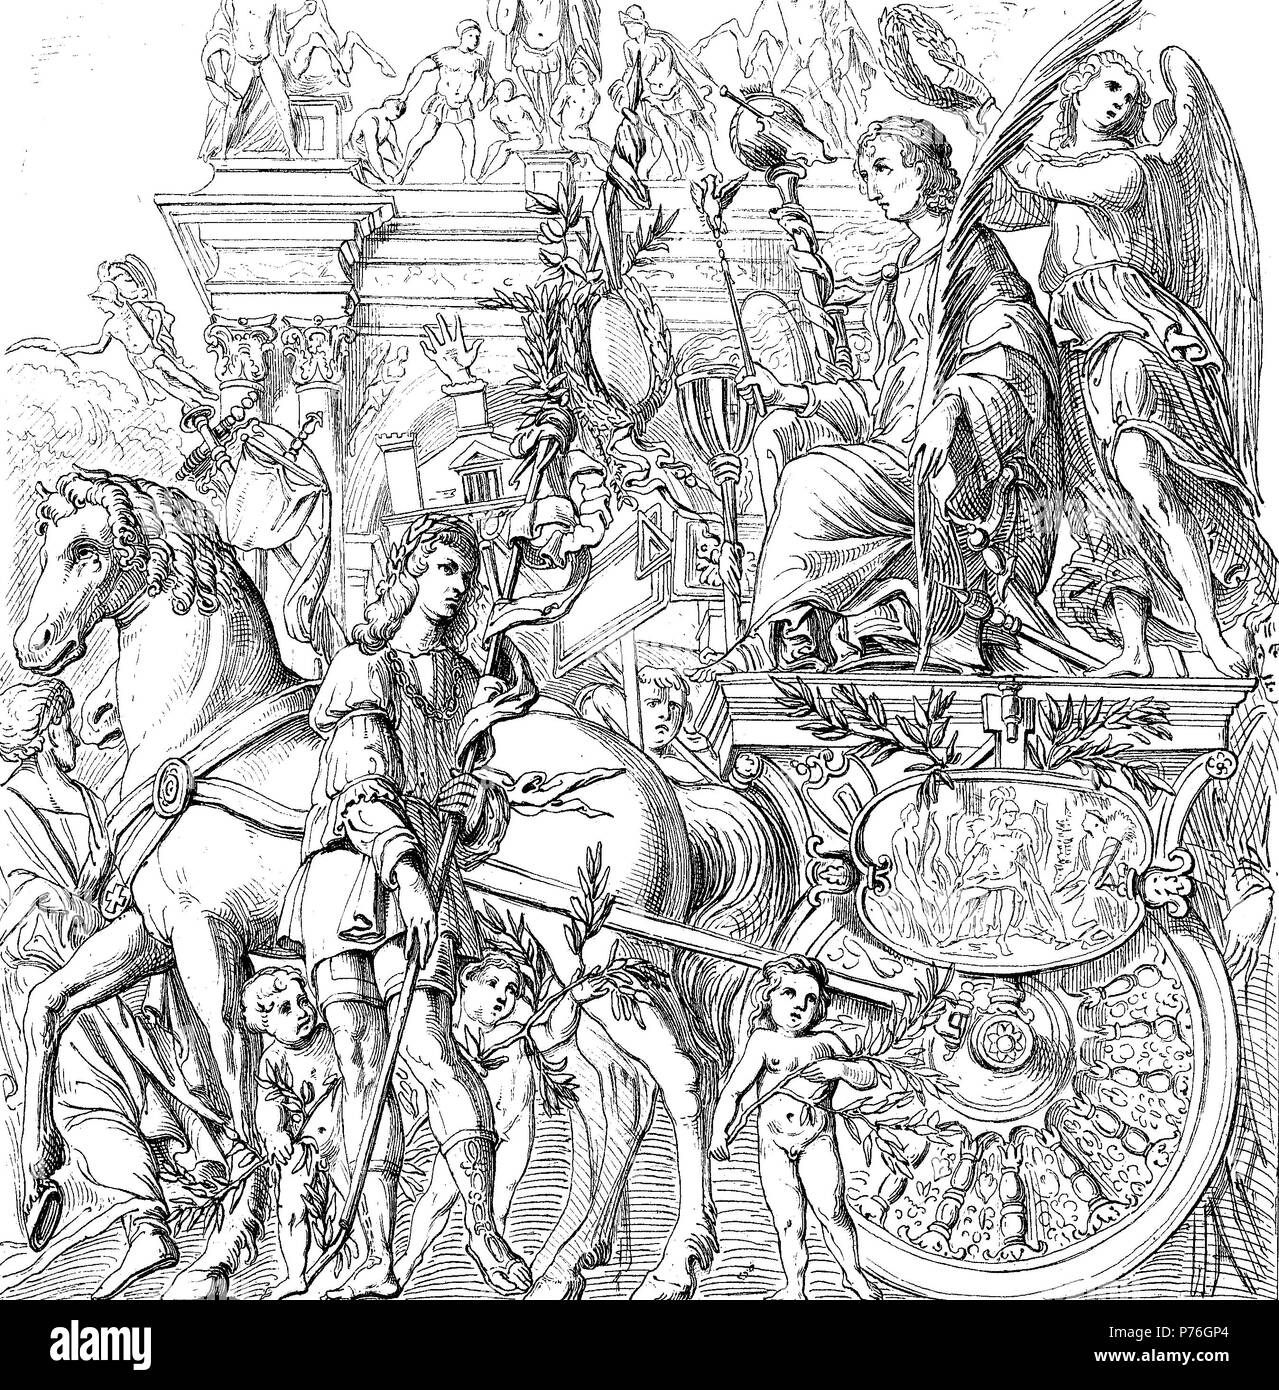 Détail du triomphe de Jules César par Andrea Mantegna, numérique l'amélioration de la reproduction de l'original d'imprimer à partir de l'année 1881 Banque D'Images